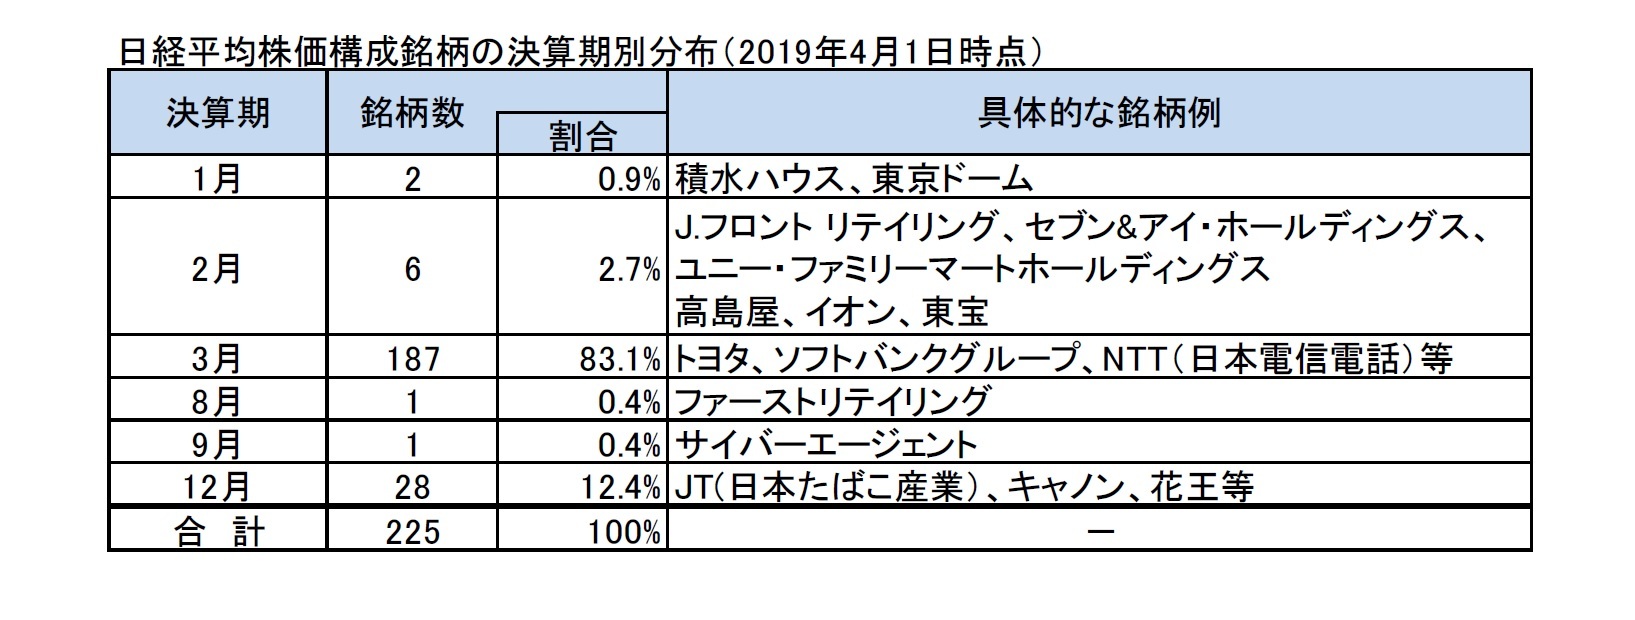 日経平均株価構成銘柄の決算期別分布（2019年4月1日時点）